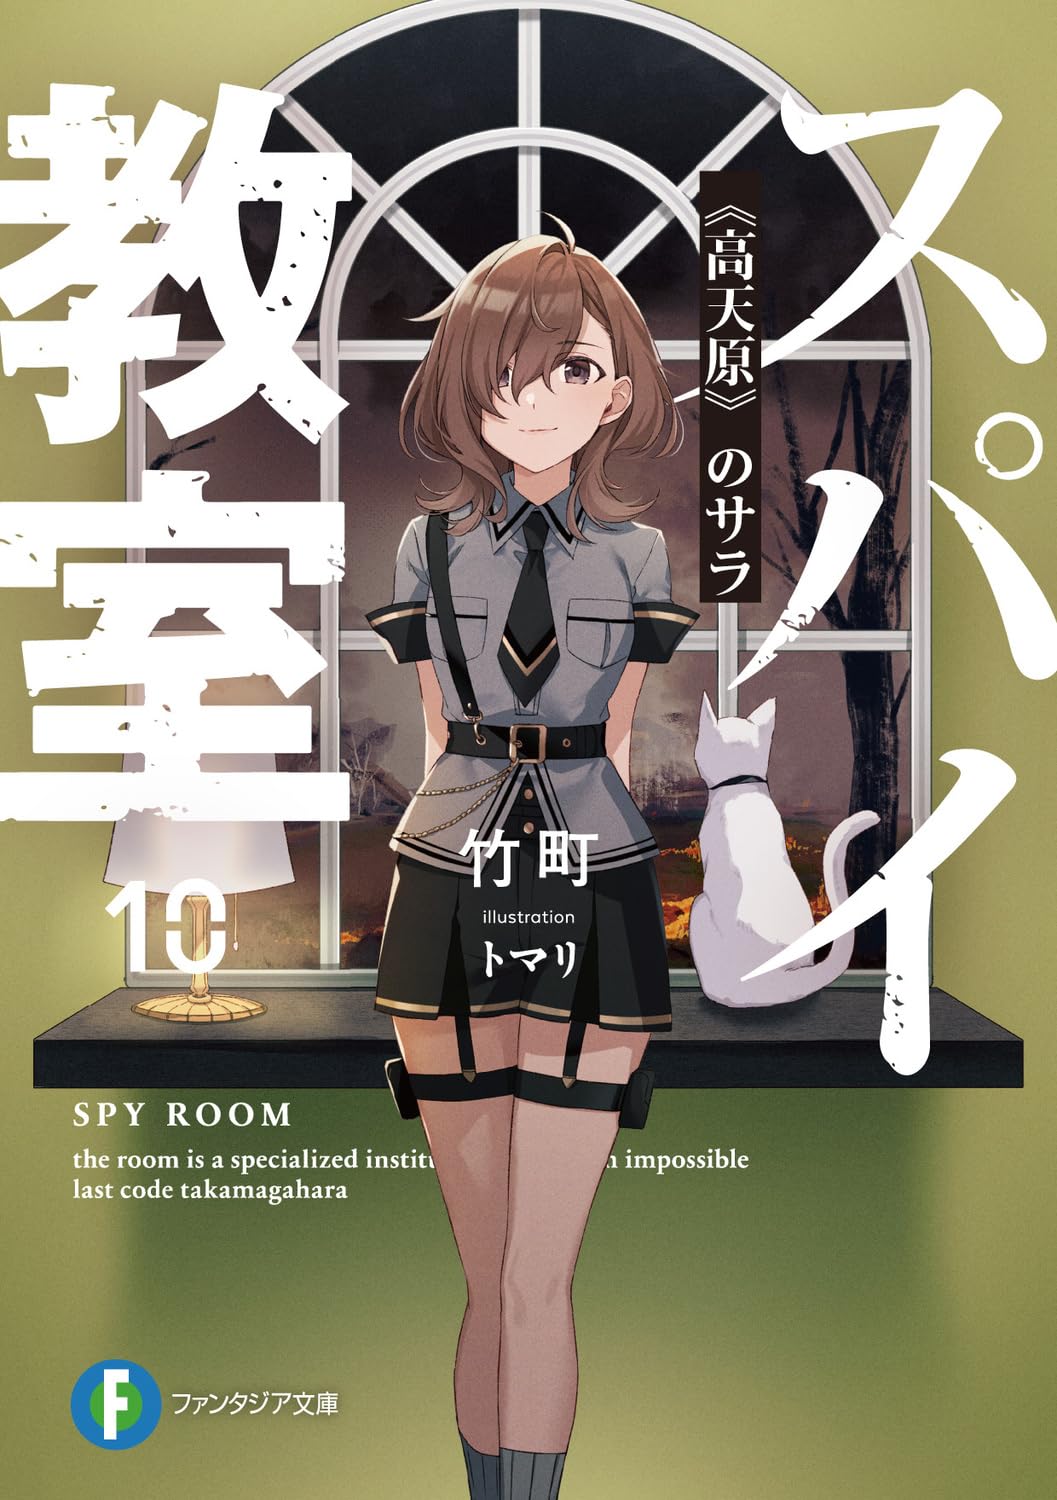 Novo volume de Youkoso Jitsuryoku – Light Novels mais Vendidas (Outubro 23  – Outubro 29) - IntoxiAnime